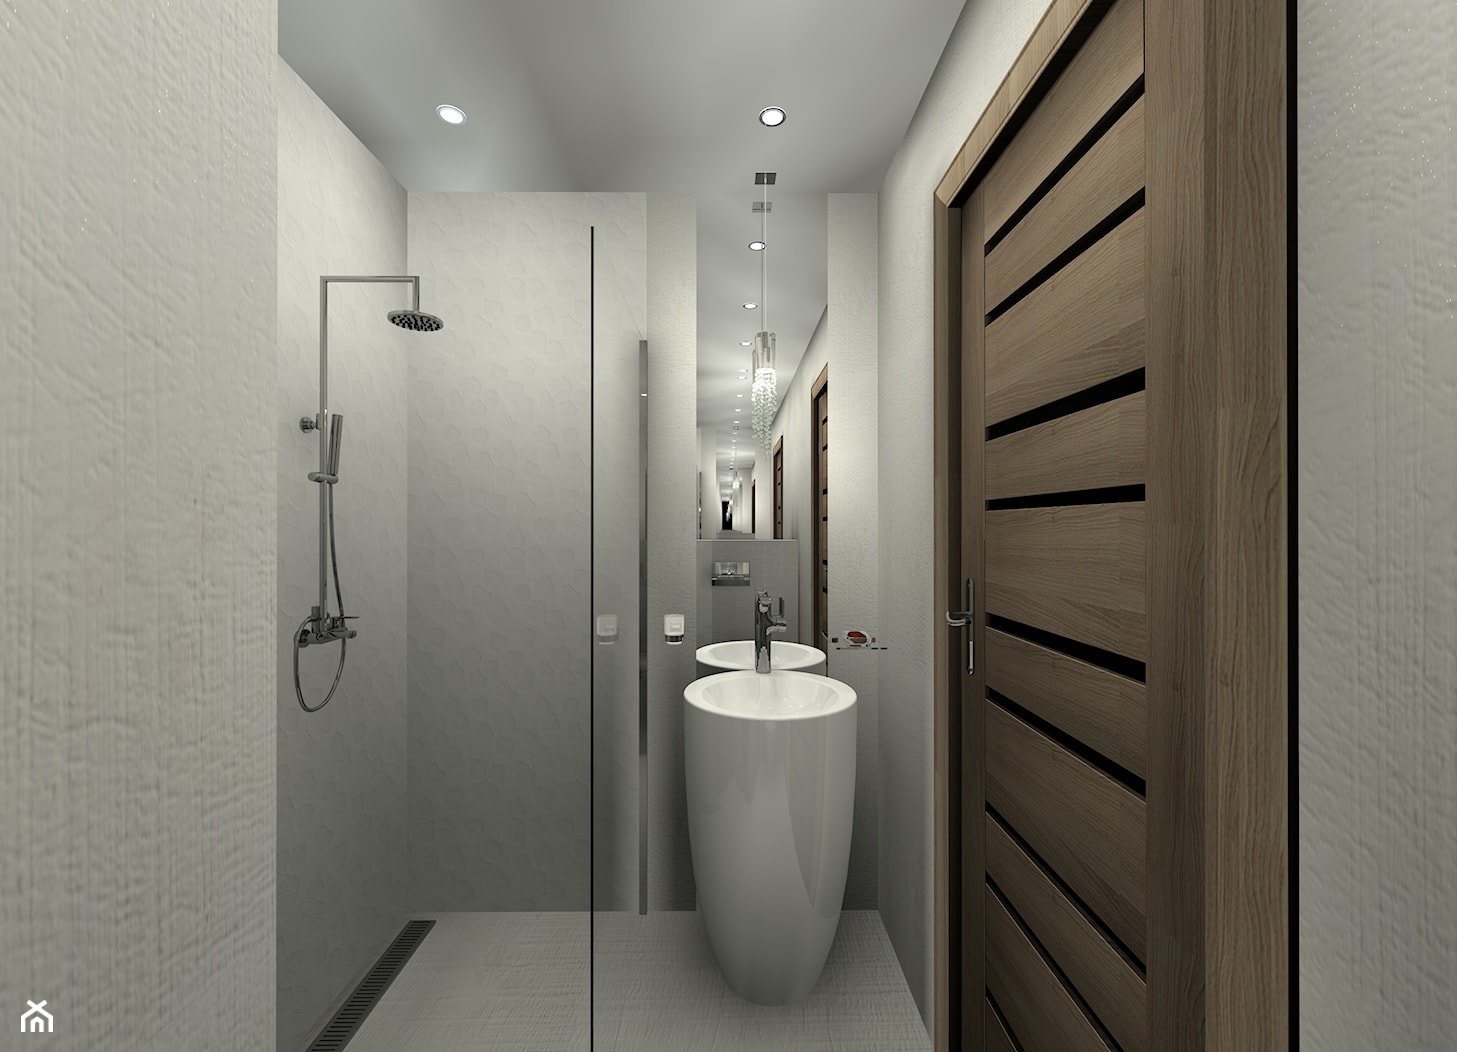 mieszkanie 35,8m2 lublin - Mała na poddaszu bez okna z marmurową podłogą łazienka, styl minimalisty ... - zdjęcie od BushkoProjekt - Homebook